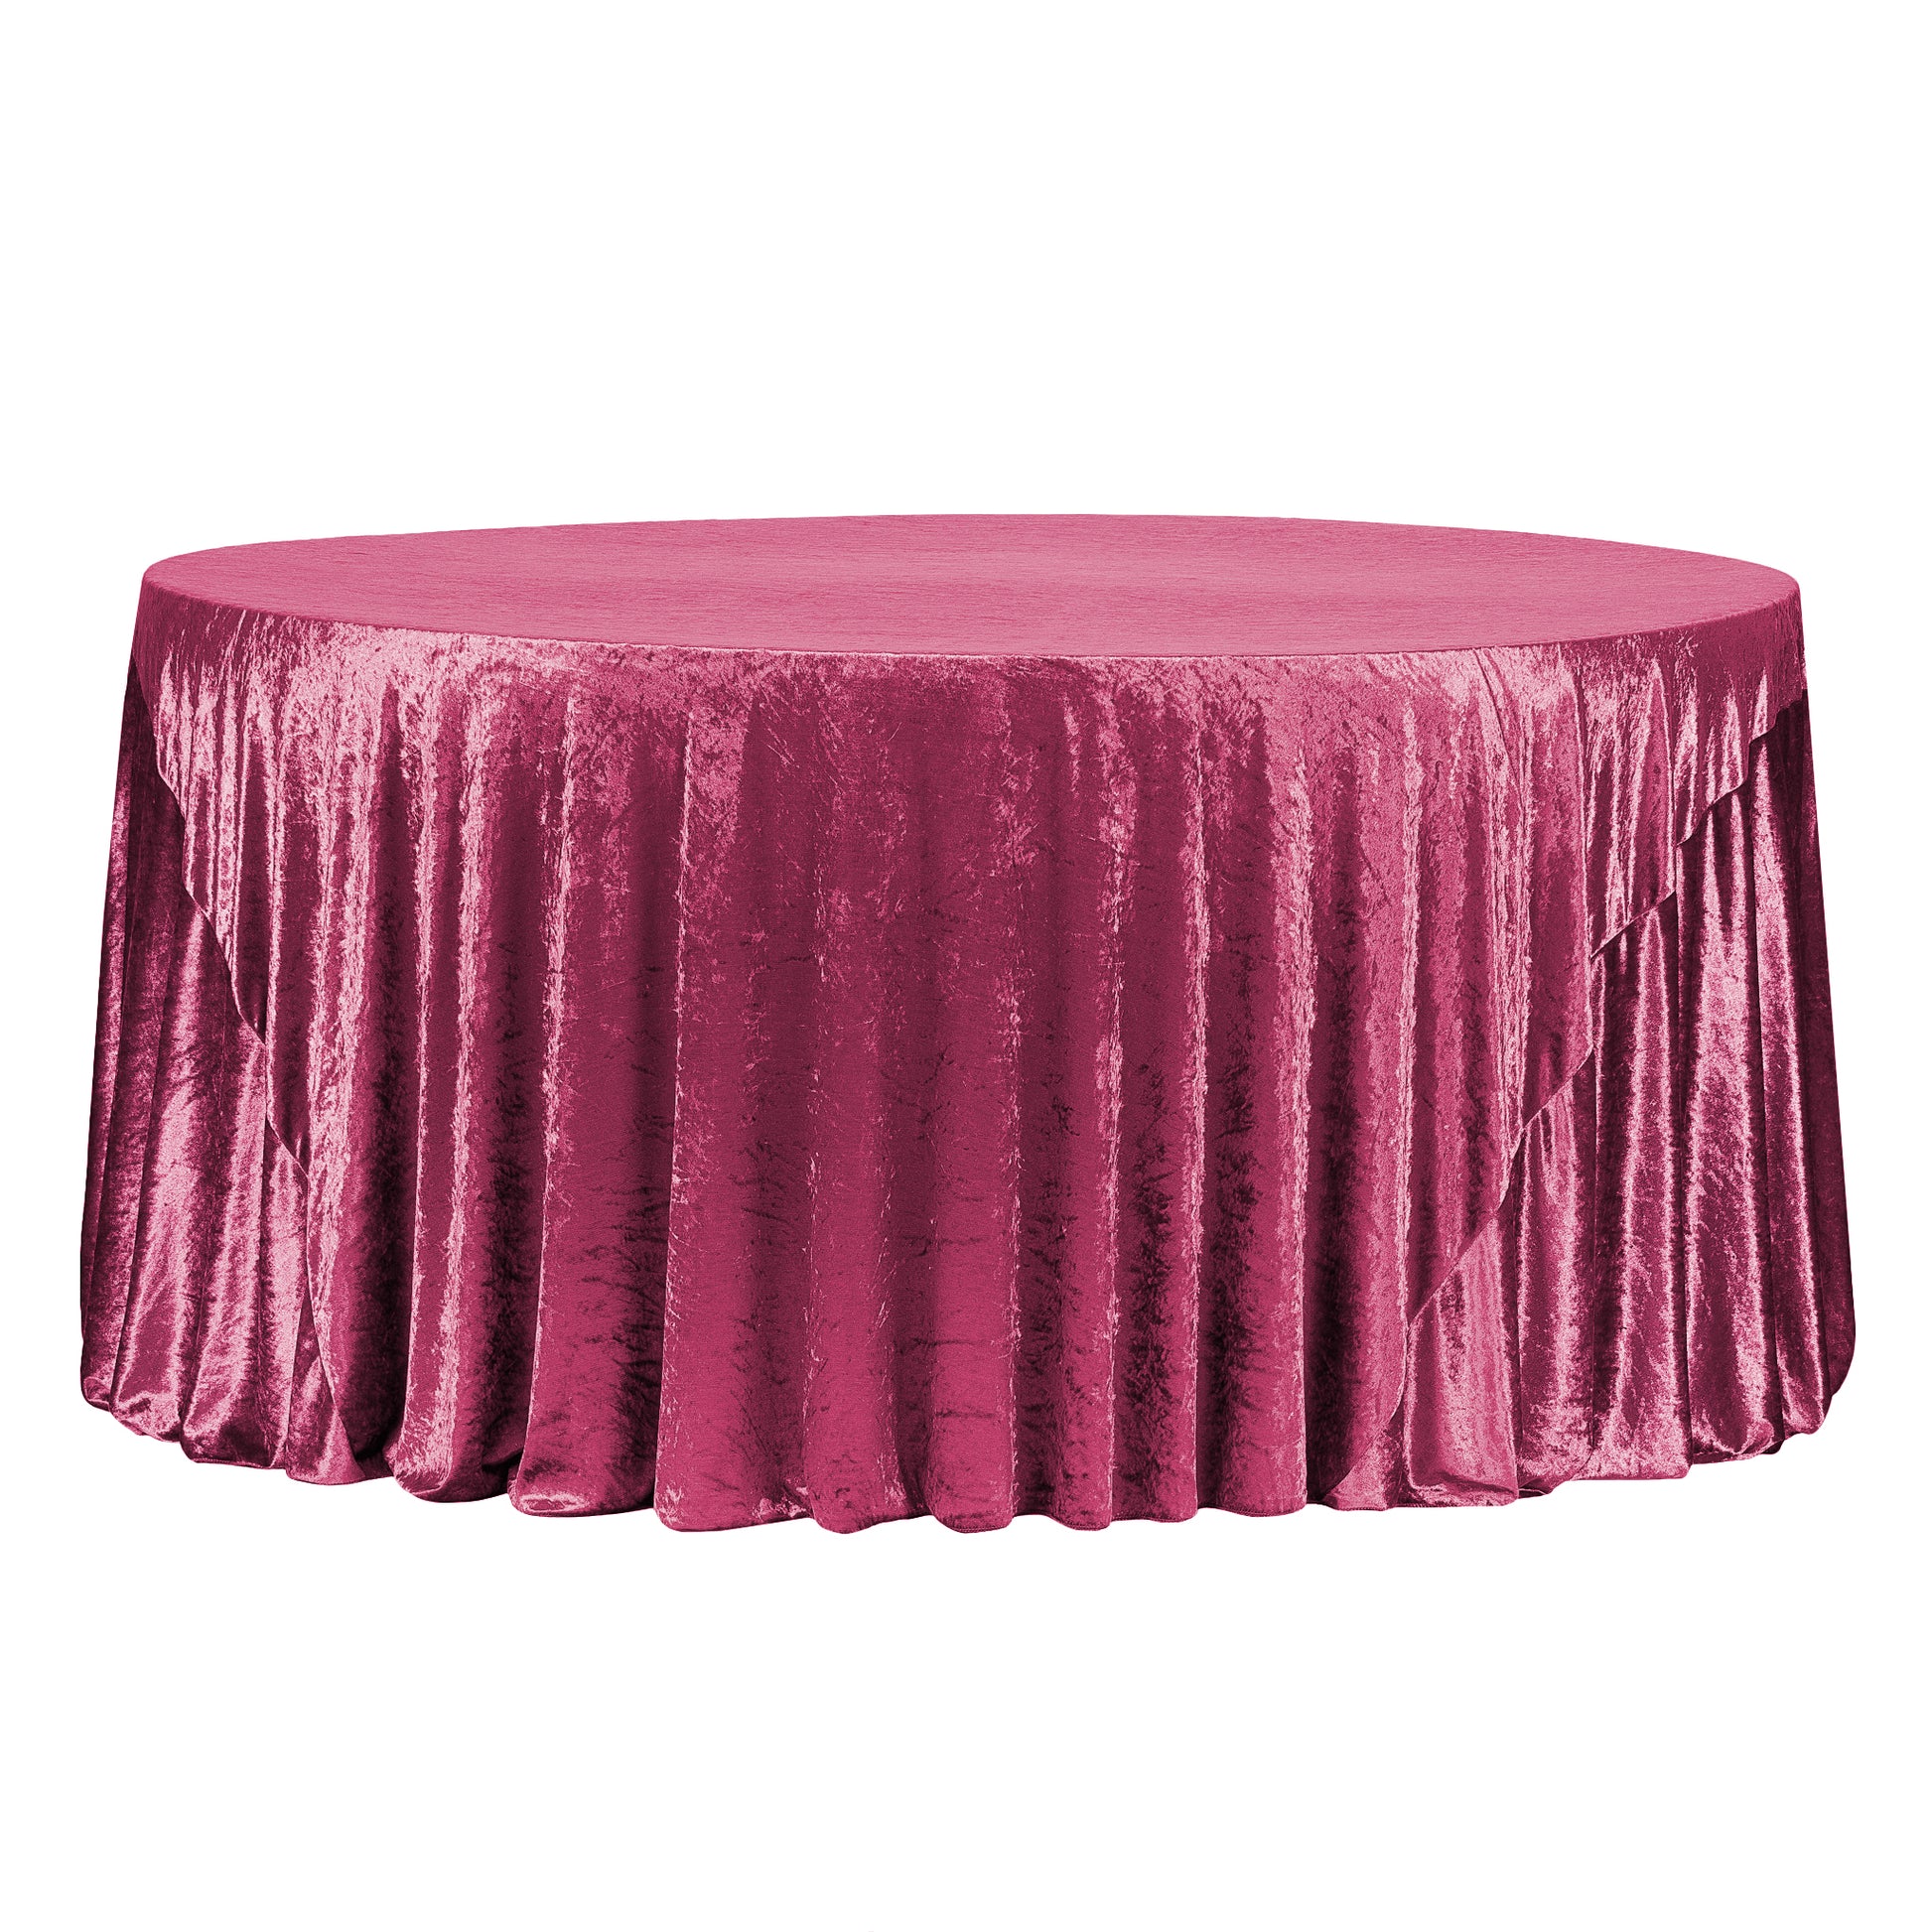 Velvet 120" Round Tablecloth - Mulberry - CV Linens